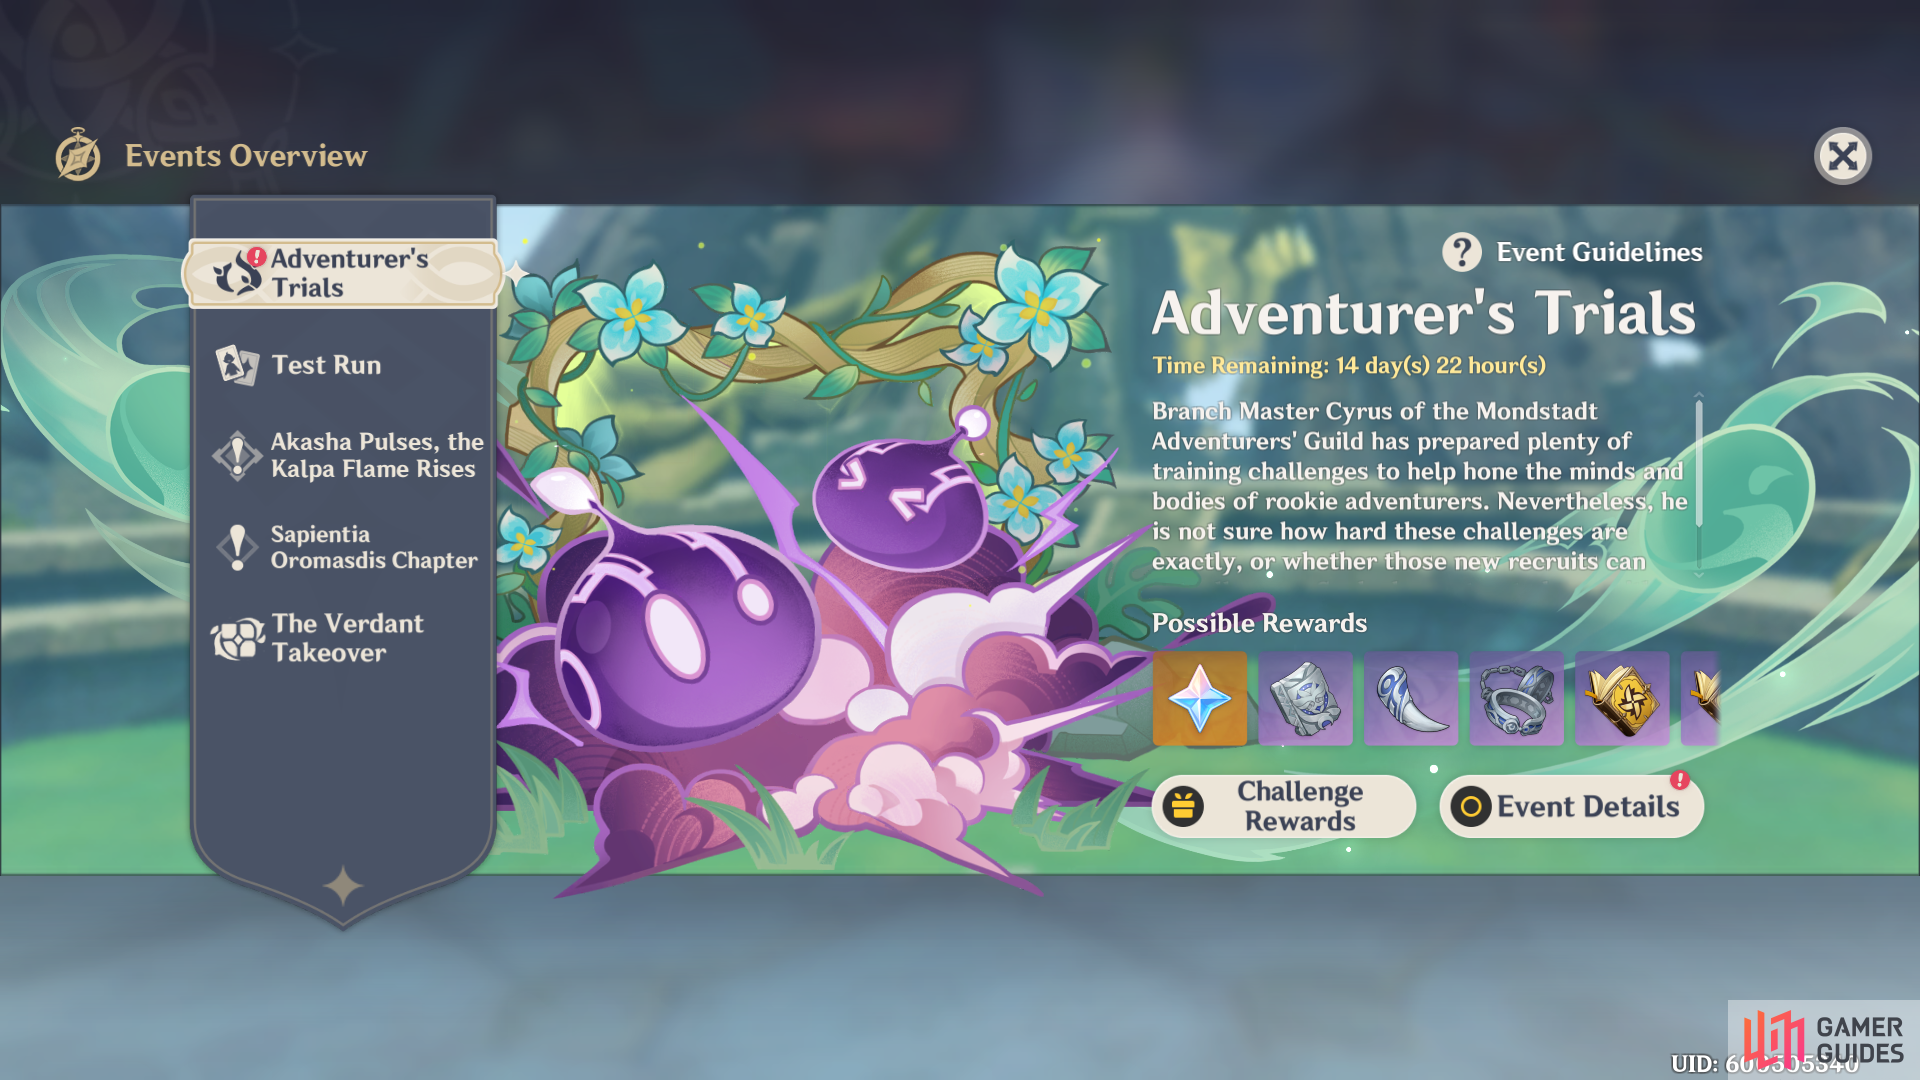 Adventurer’s Trials event banner in Genshin Impact version 3.2.